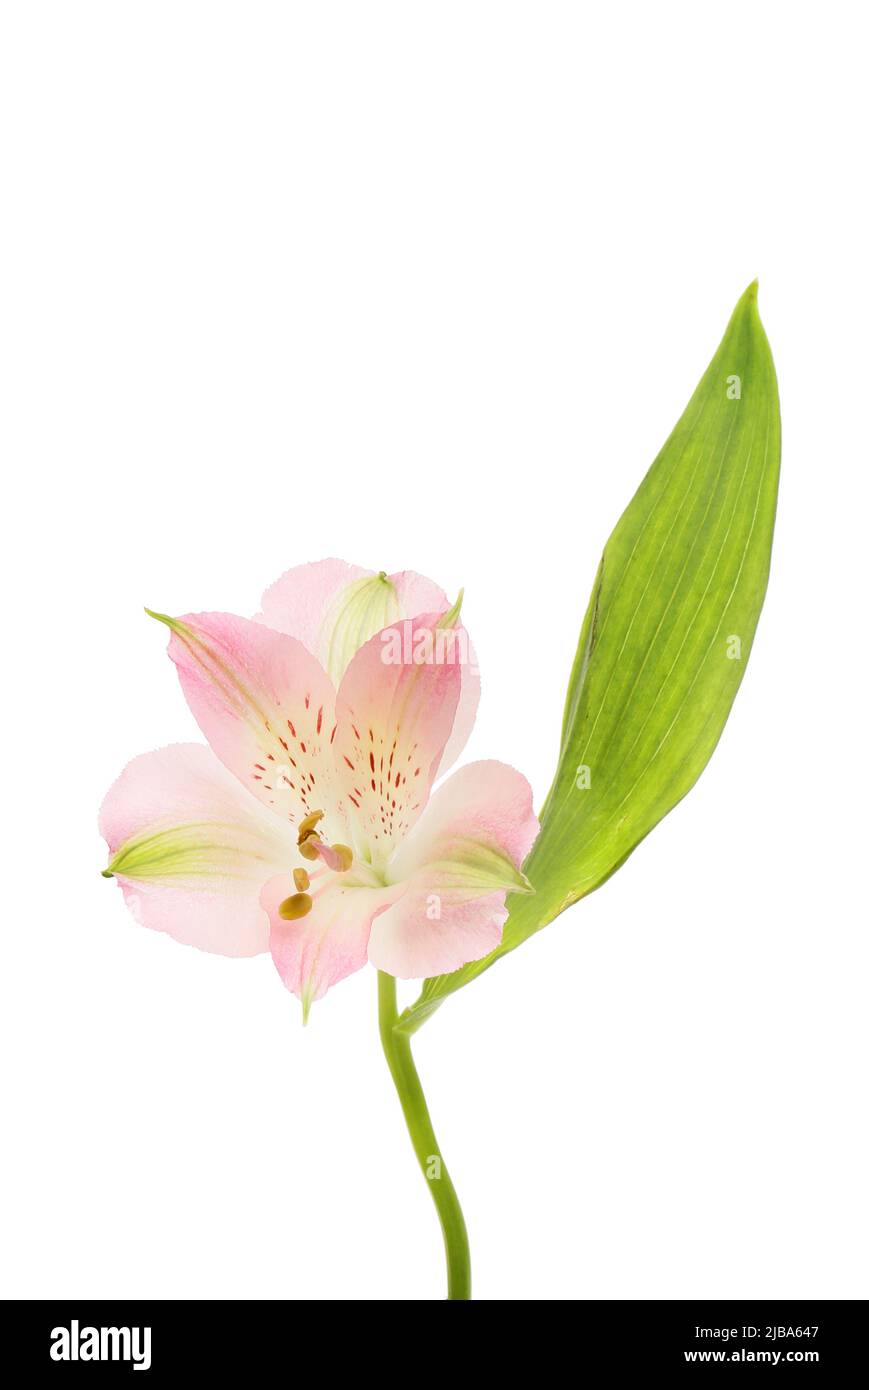 Alstroemeria singolo fiore foglia e isolata contro bianco Foto Stock